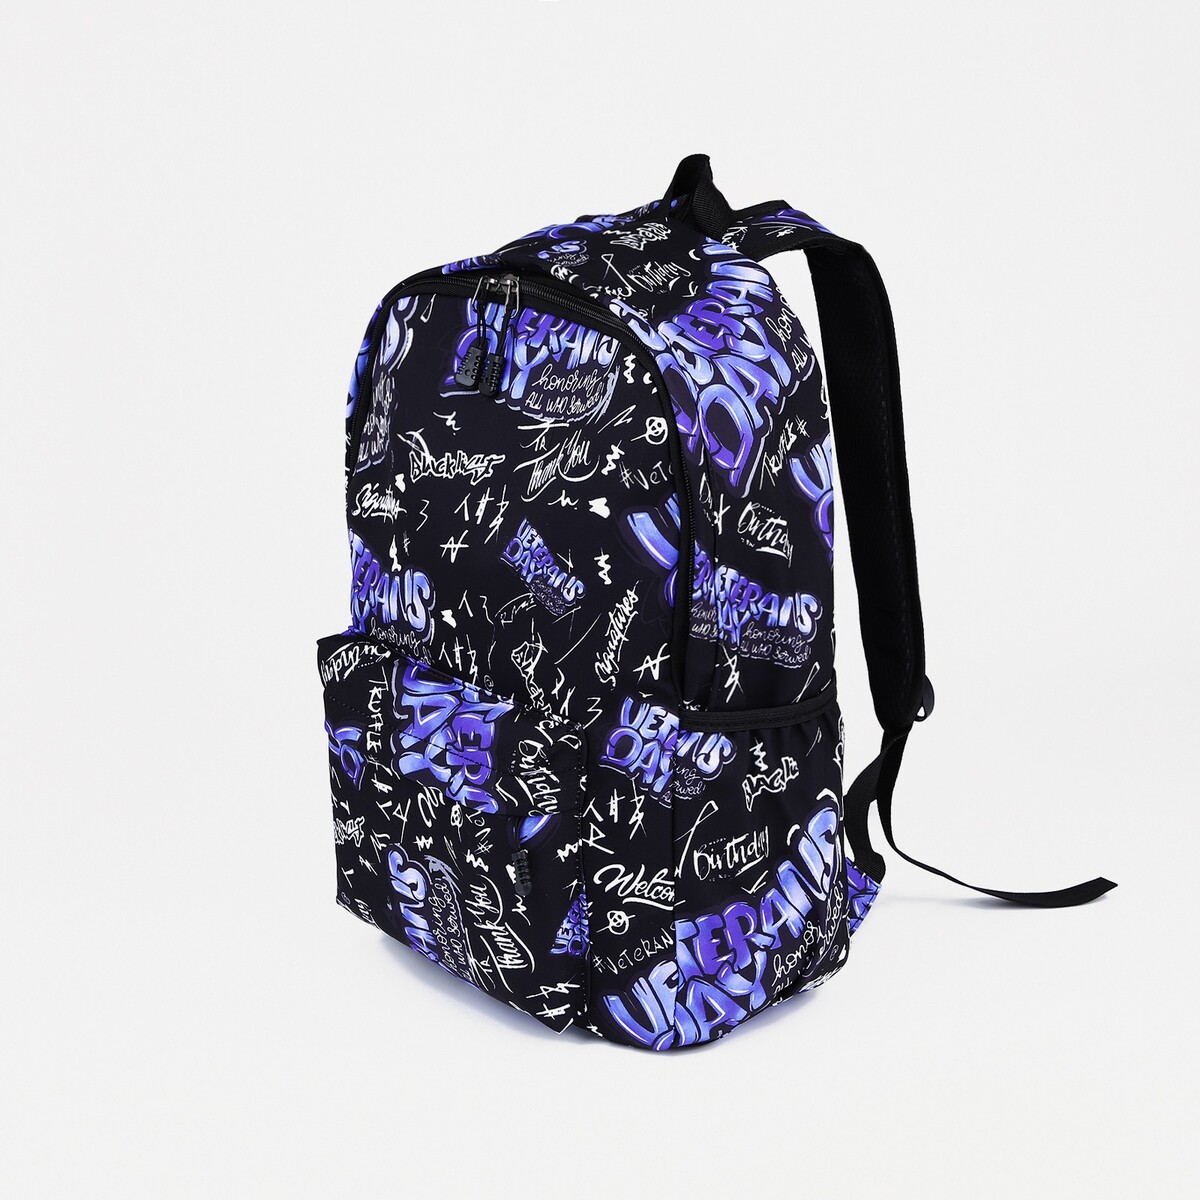 Рюкзак на молнии, 3 наружных кармана, цвет фиолетовый/черный косметичка на молнии фиолетовый разно ный